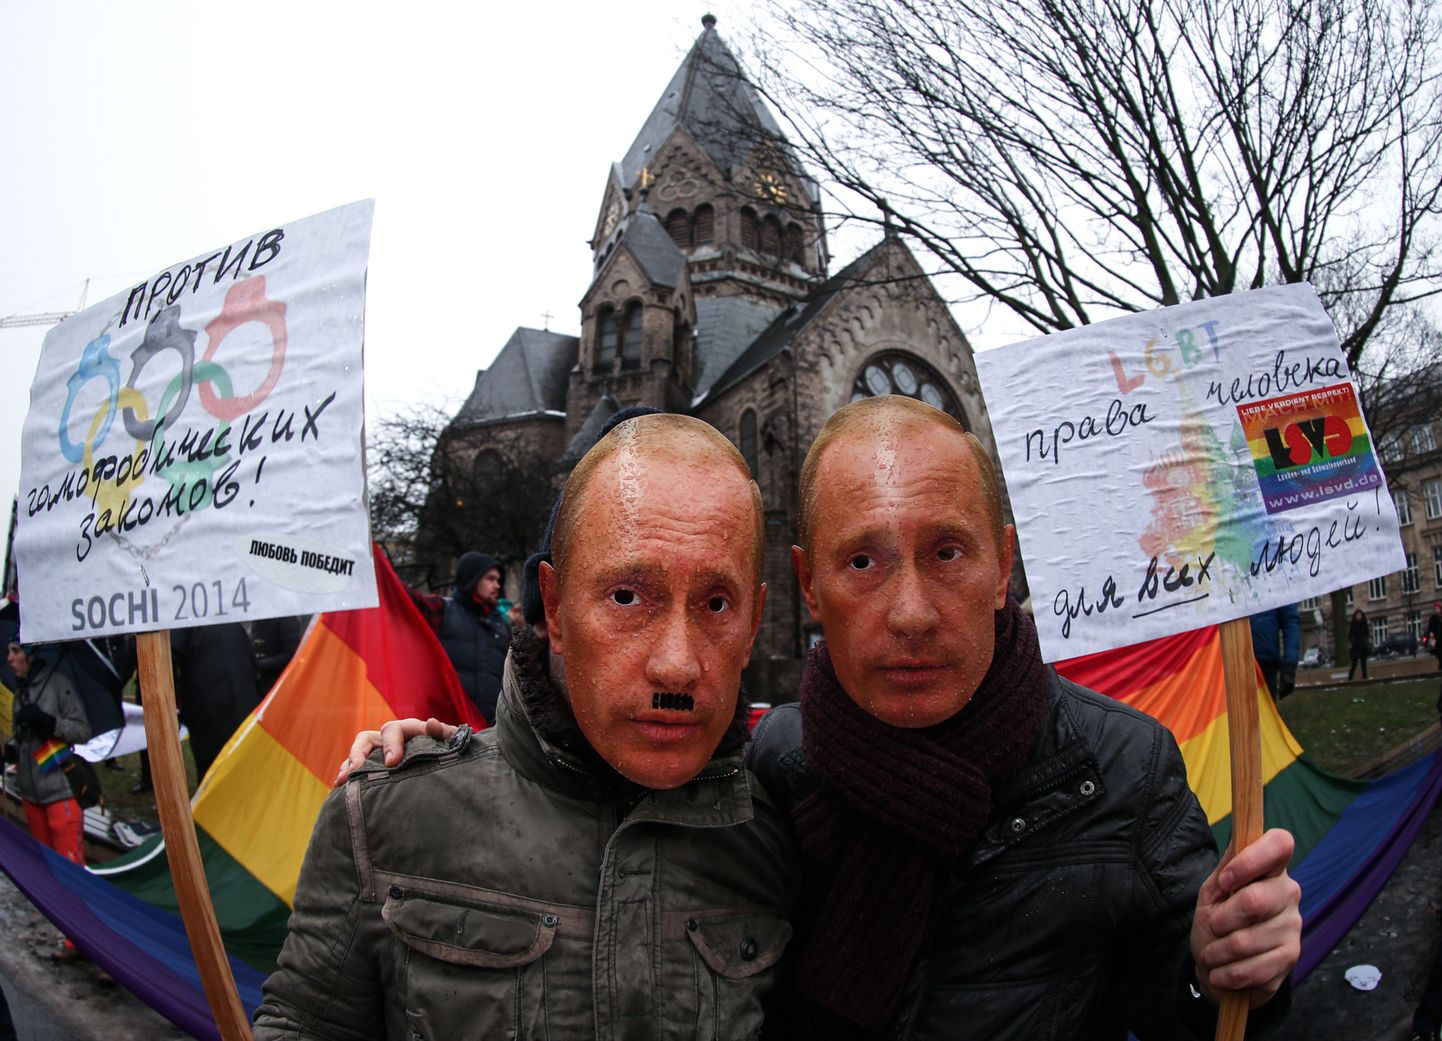 Venemaal homopropagandat keelava seaduse vastane meeleavaldus Saksamaal Hamburgis.